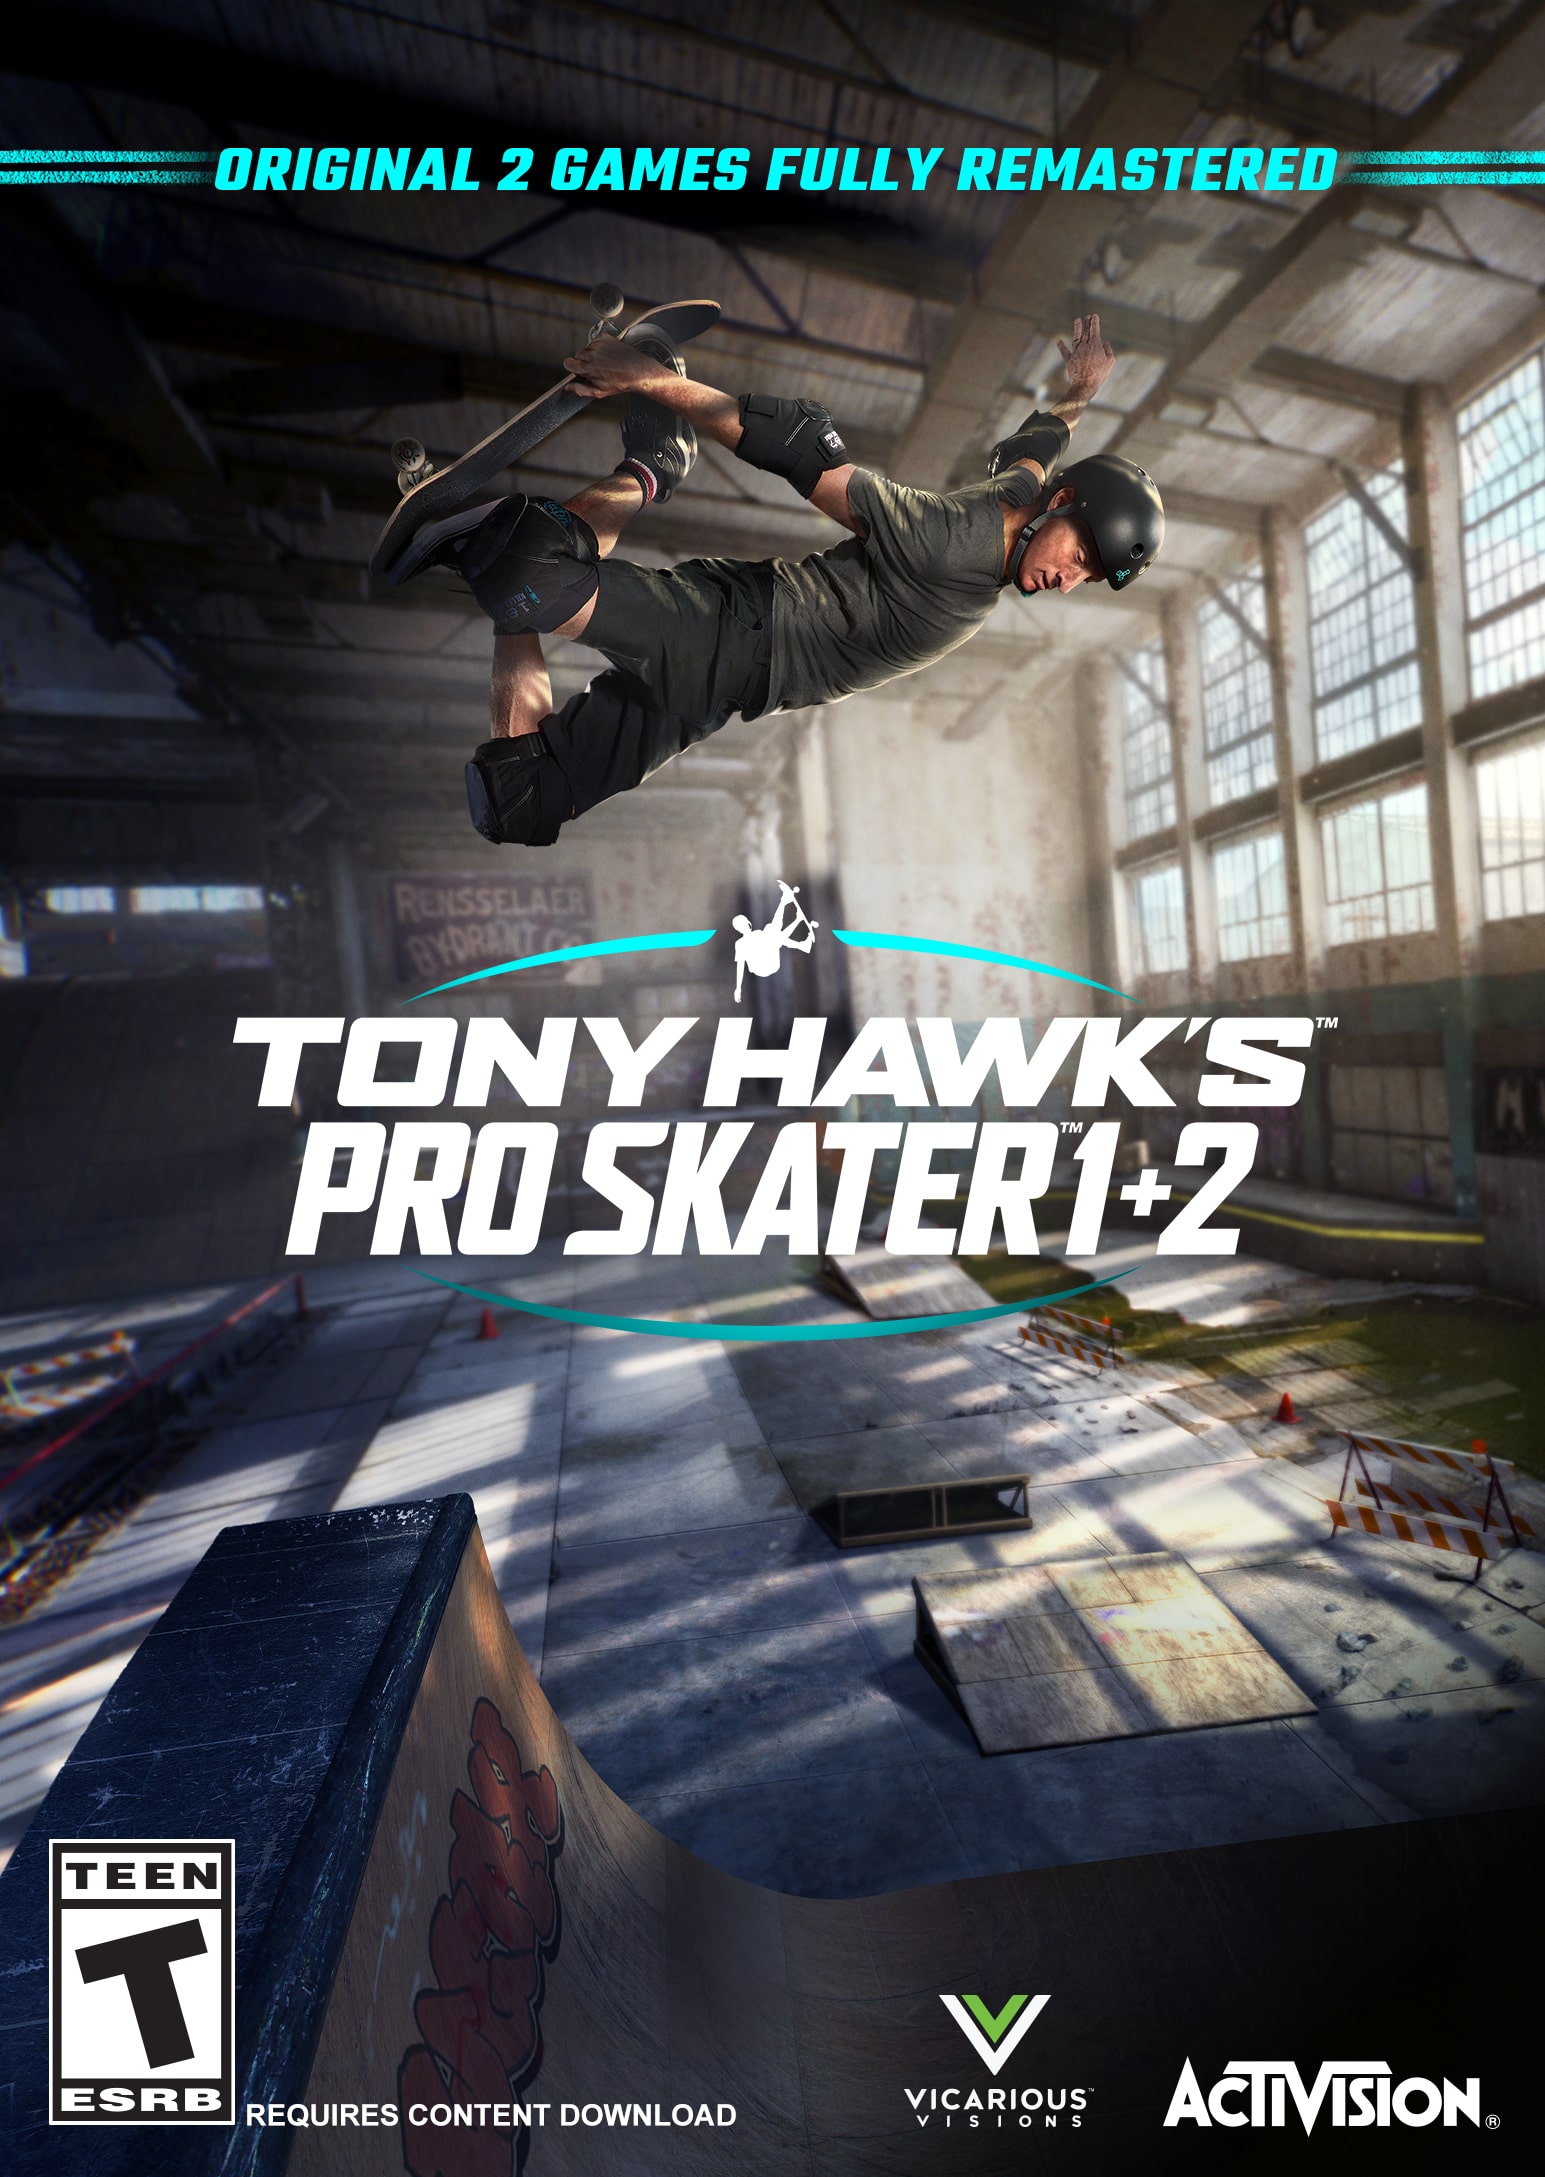 Tony Hawk's Pro Skater 1 + 2 Upgrade and Purchase FAQ